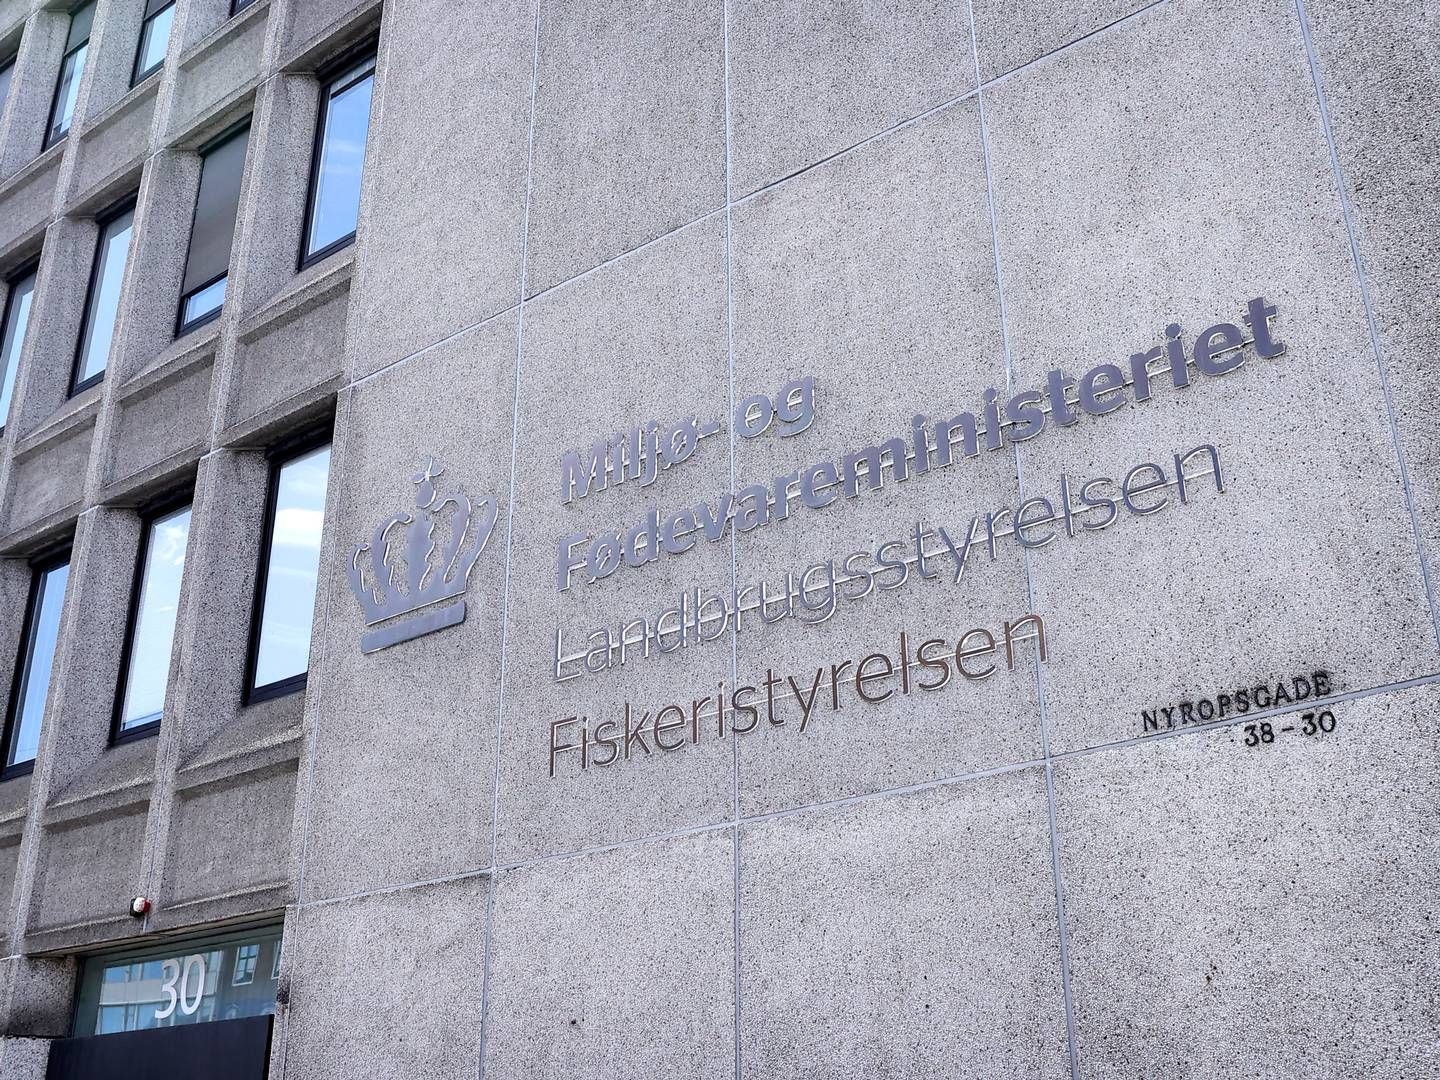 Folketinget blev vildledt i sagen om ulovligt muslingefiskeri i Limfjorden, ifølge TV 2. | Foto: Jens Dresling